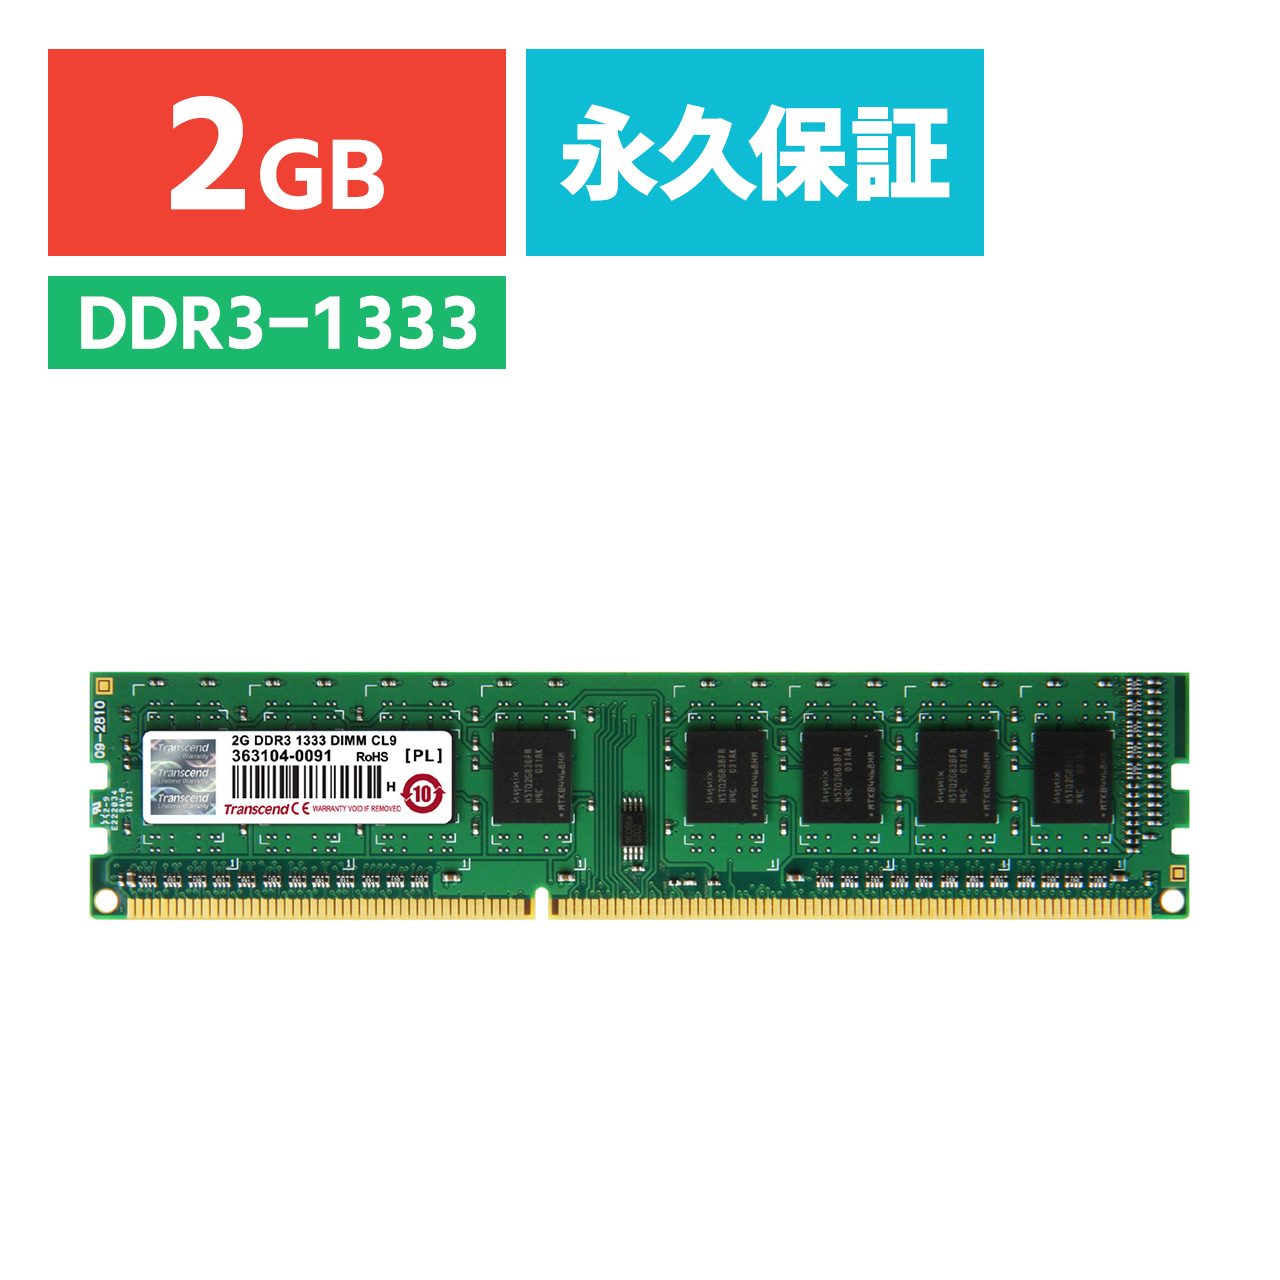 新品未使用品付属品③Transcend サーバー用メモリ2GBx8 DDR3 PC3-10600R